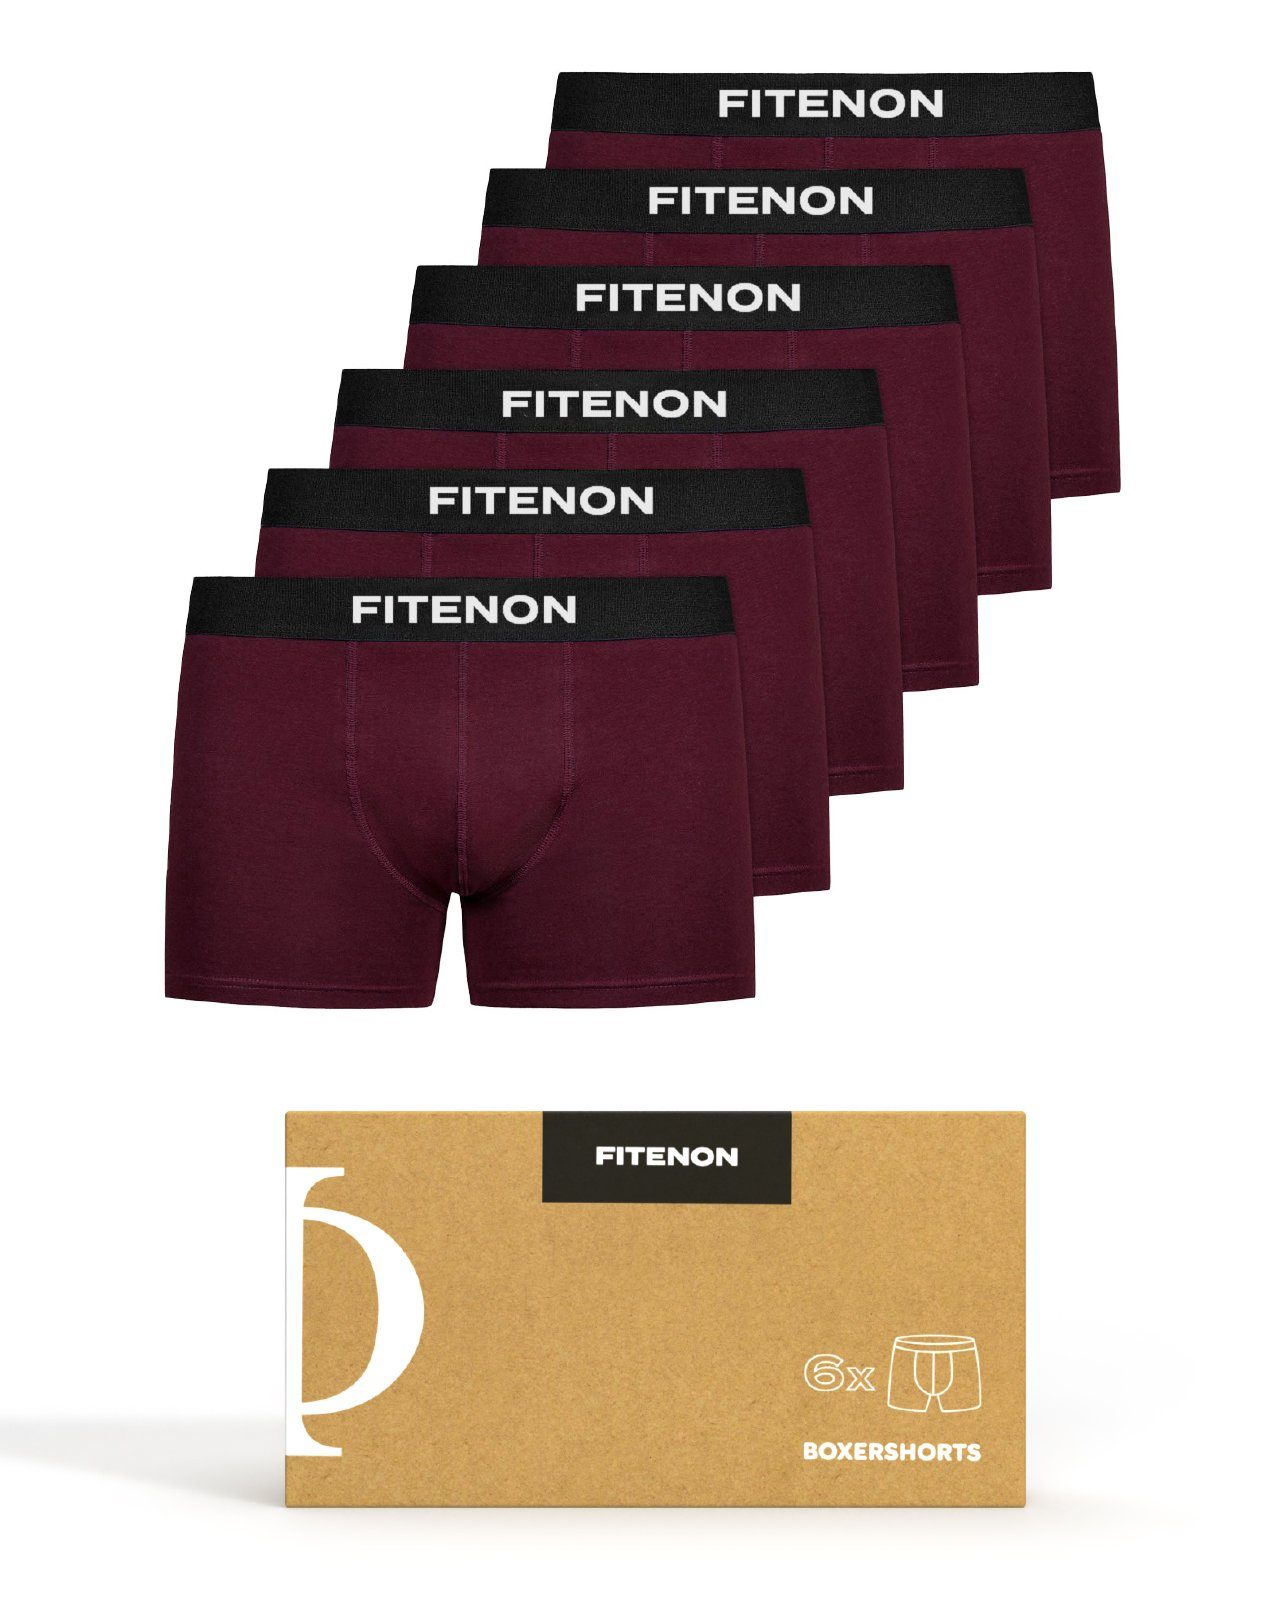 FITENON Boxershorts Herren Unterhosen, Unterwäsche, ohne kratzenden Zettel, Baumwolle (6 er Set) mit Logo-Elastikbund 6x Burgunderrot